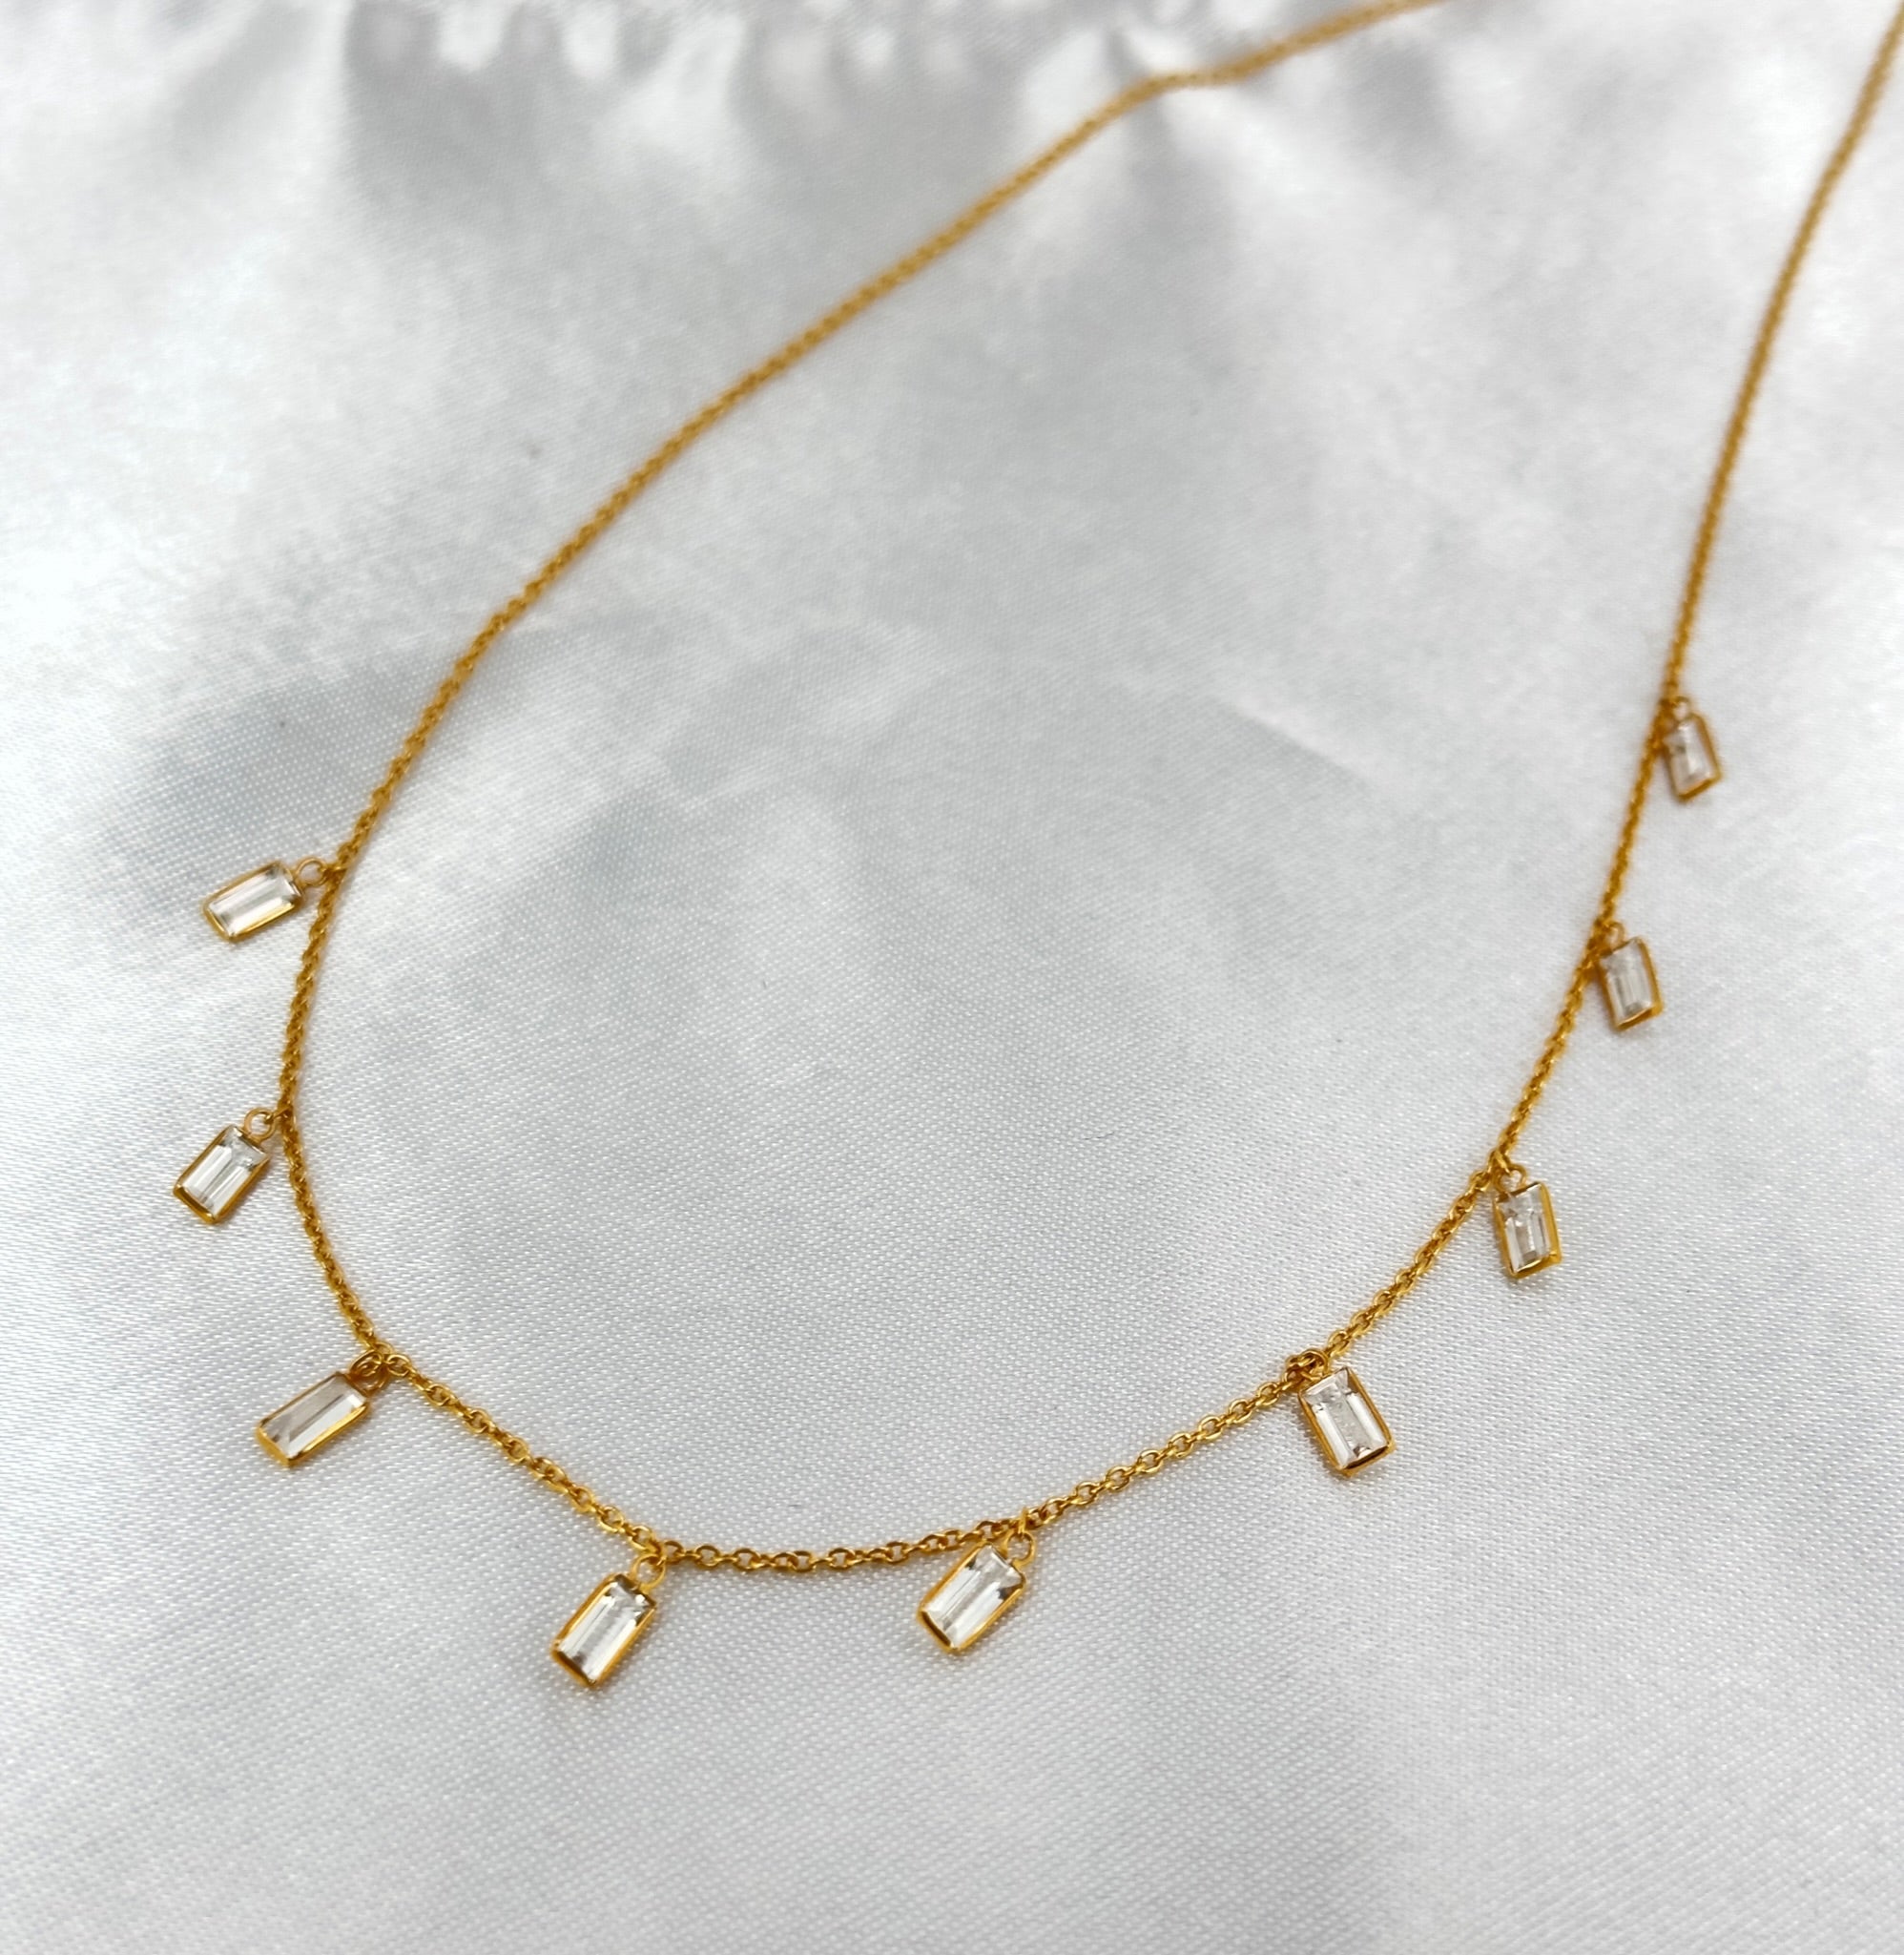 Dangle Gemstone Necklace, White Sapphire Necklace, Bezel Set Dainty Necklace 18k